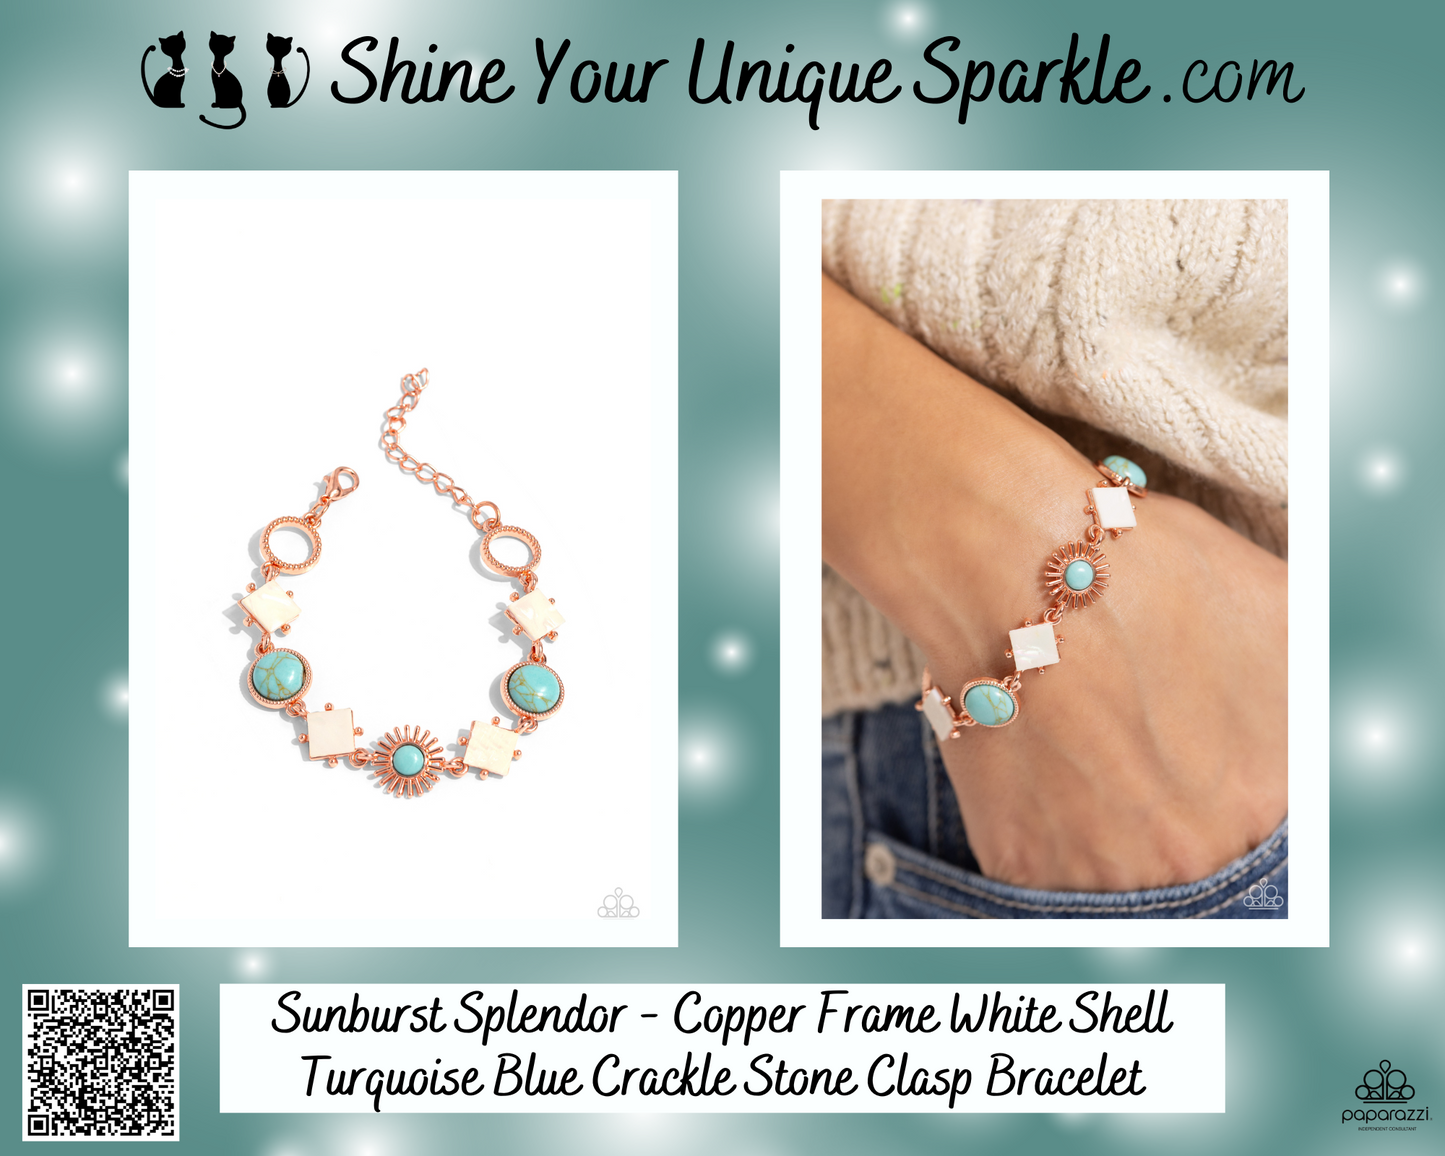 Sunburst Splendor - Copper Frame White Shell Turquoise Blue Crackle Stone Clasp Bracelet